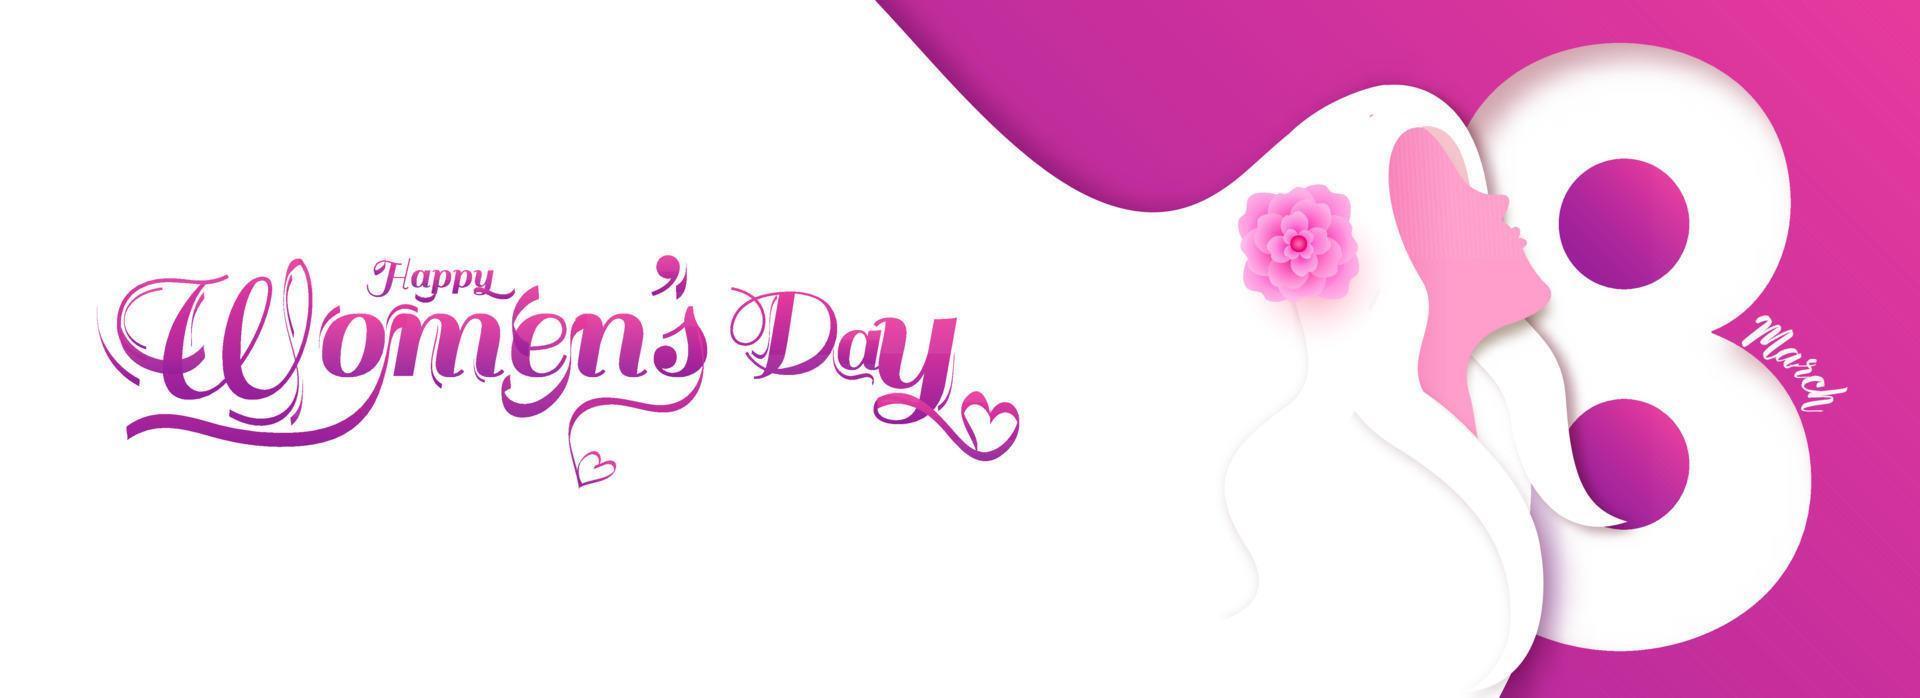 Papier Schnitt Stil 8 März Text mit Frau Gesicht lange Haar fließend auf Weiß und Rosa Hintergrund zum glücklich Damen Tag Feier. Header oder Banner Design. vektor